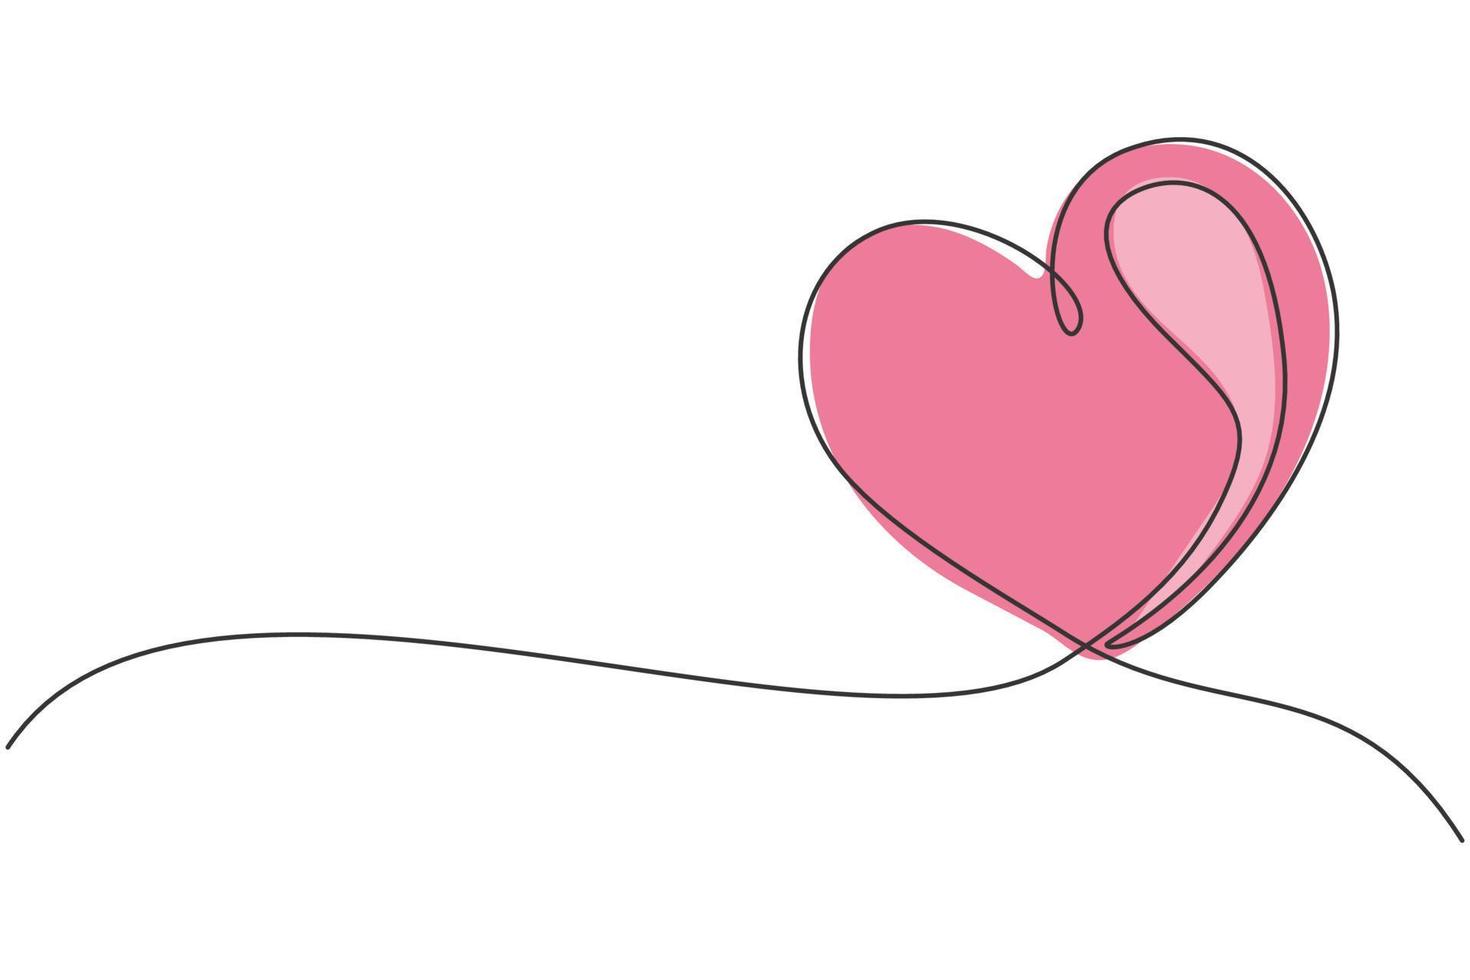 un disegno a tratteggio di un simpatico cuore d'amore a forma di biglietto di auguri. simbolo romantico per invito a nozze. illustrazione grafica vettoriale di disegno di disegno di linea continua alla moda